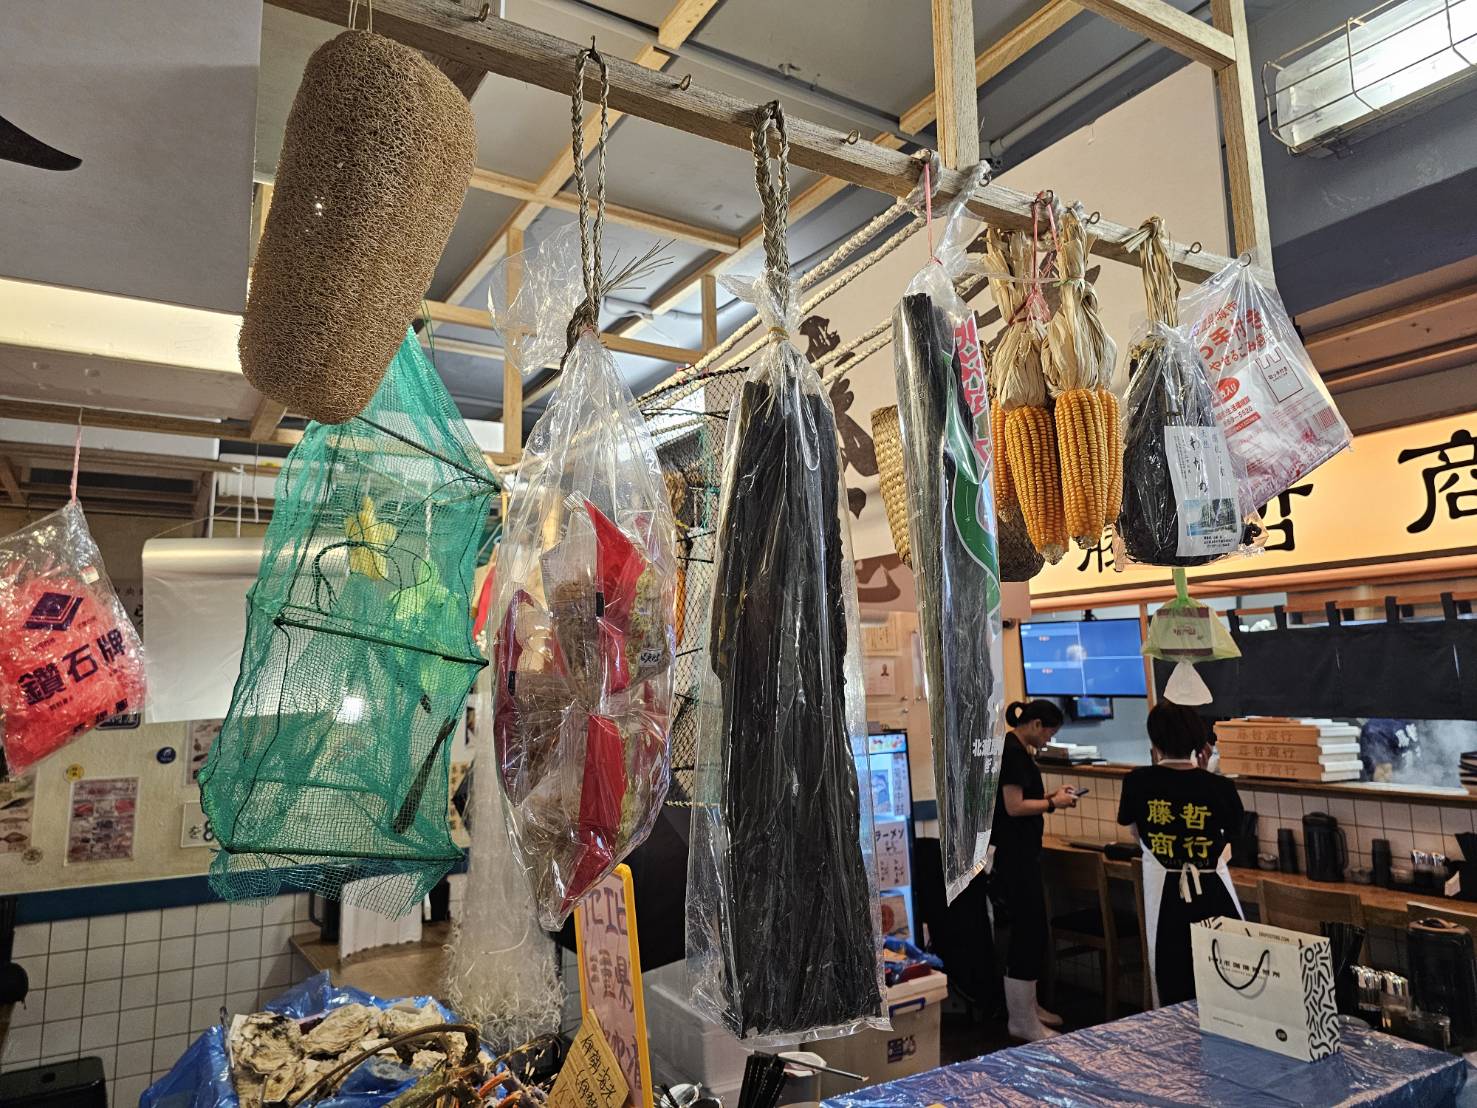 藤哲商行店内悬挂有各式各样的渔市杂货，相当拟真。记者陈睿中／摄影